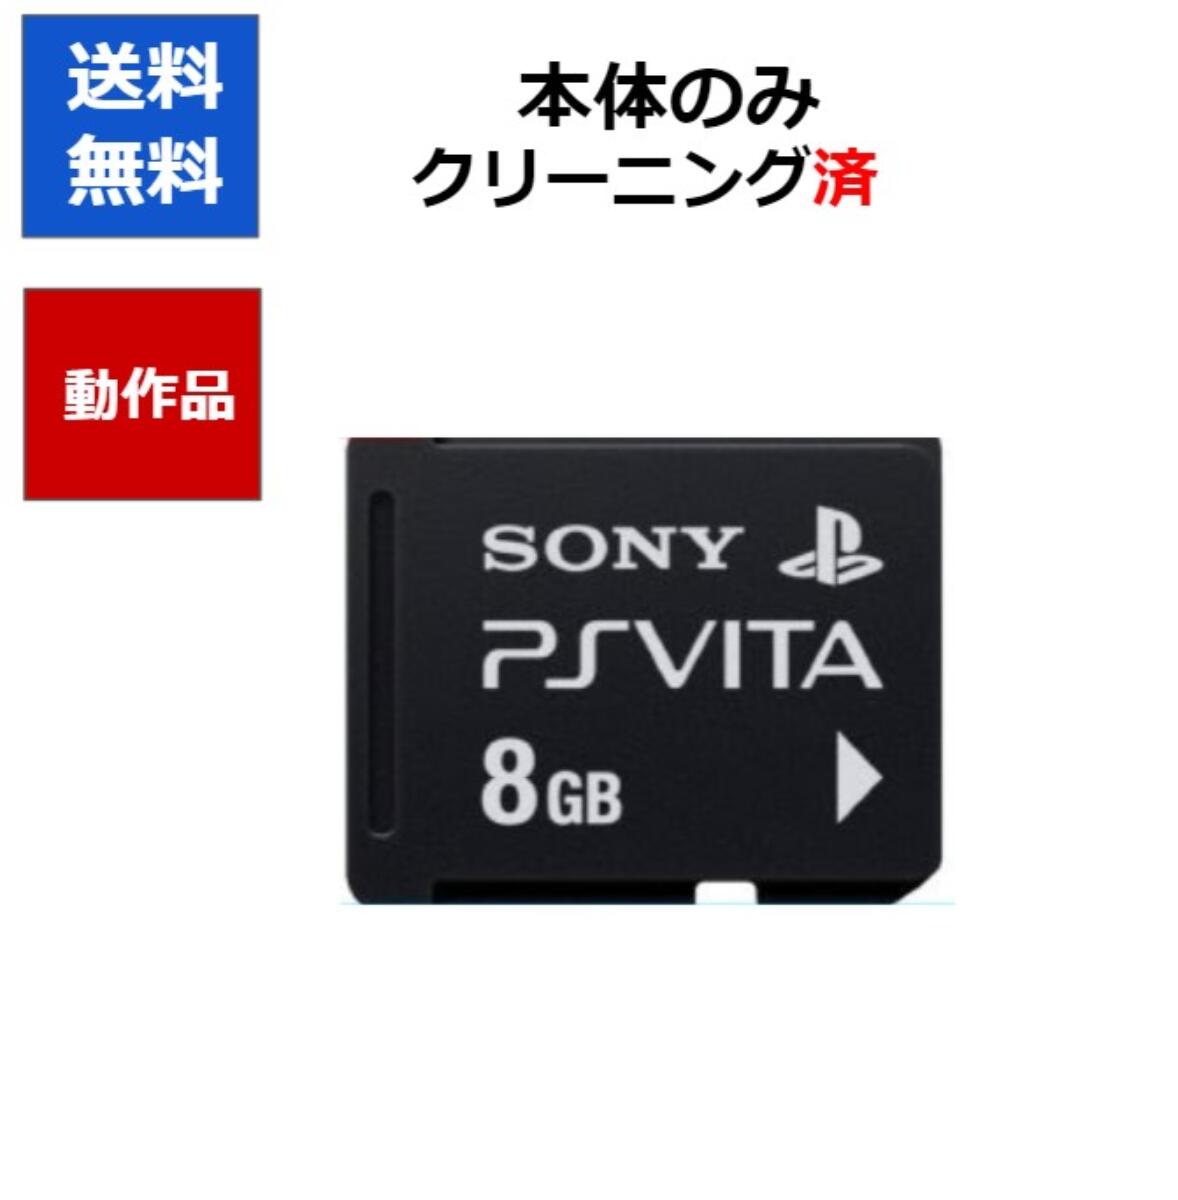 【レビューキャンペーン実施中!】PSvita メモリーカード PlayStation Vita メモリーカード 8GB 【中古】【ソフトプレ…